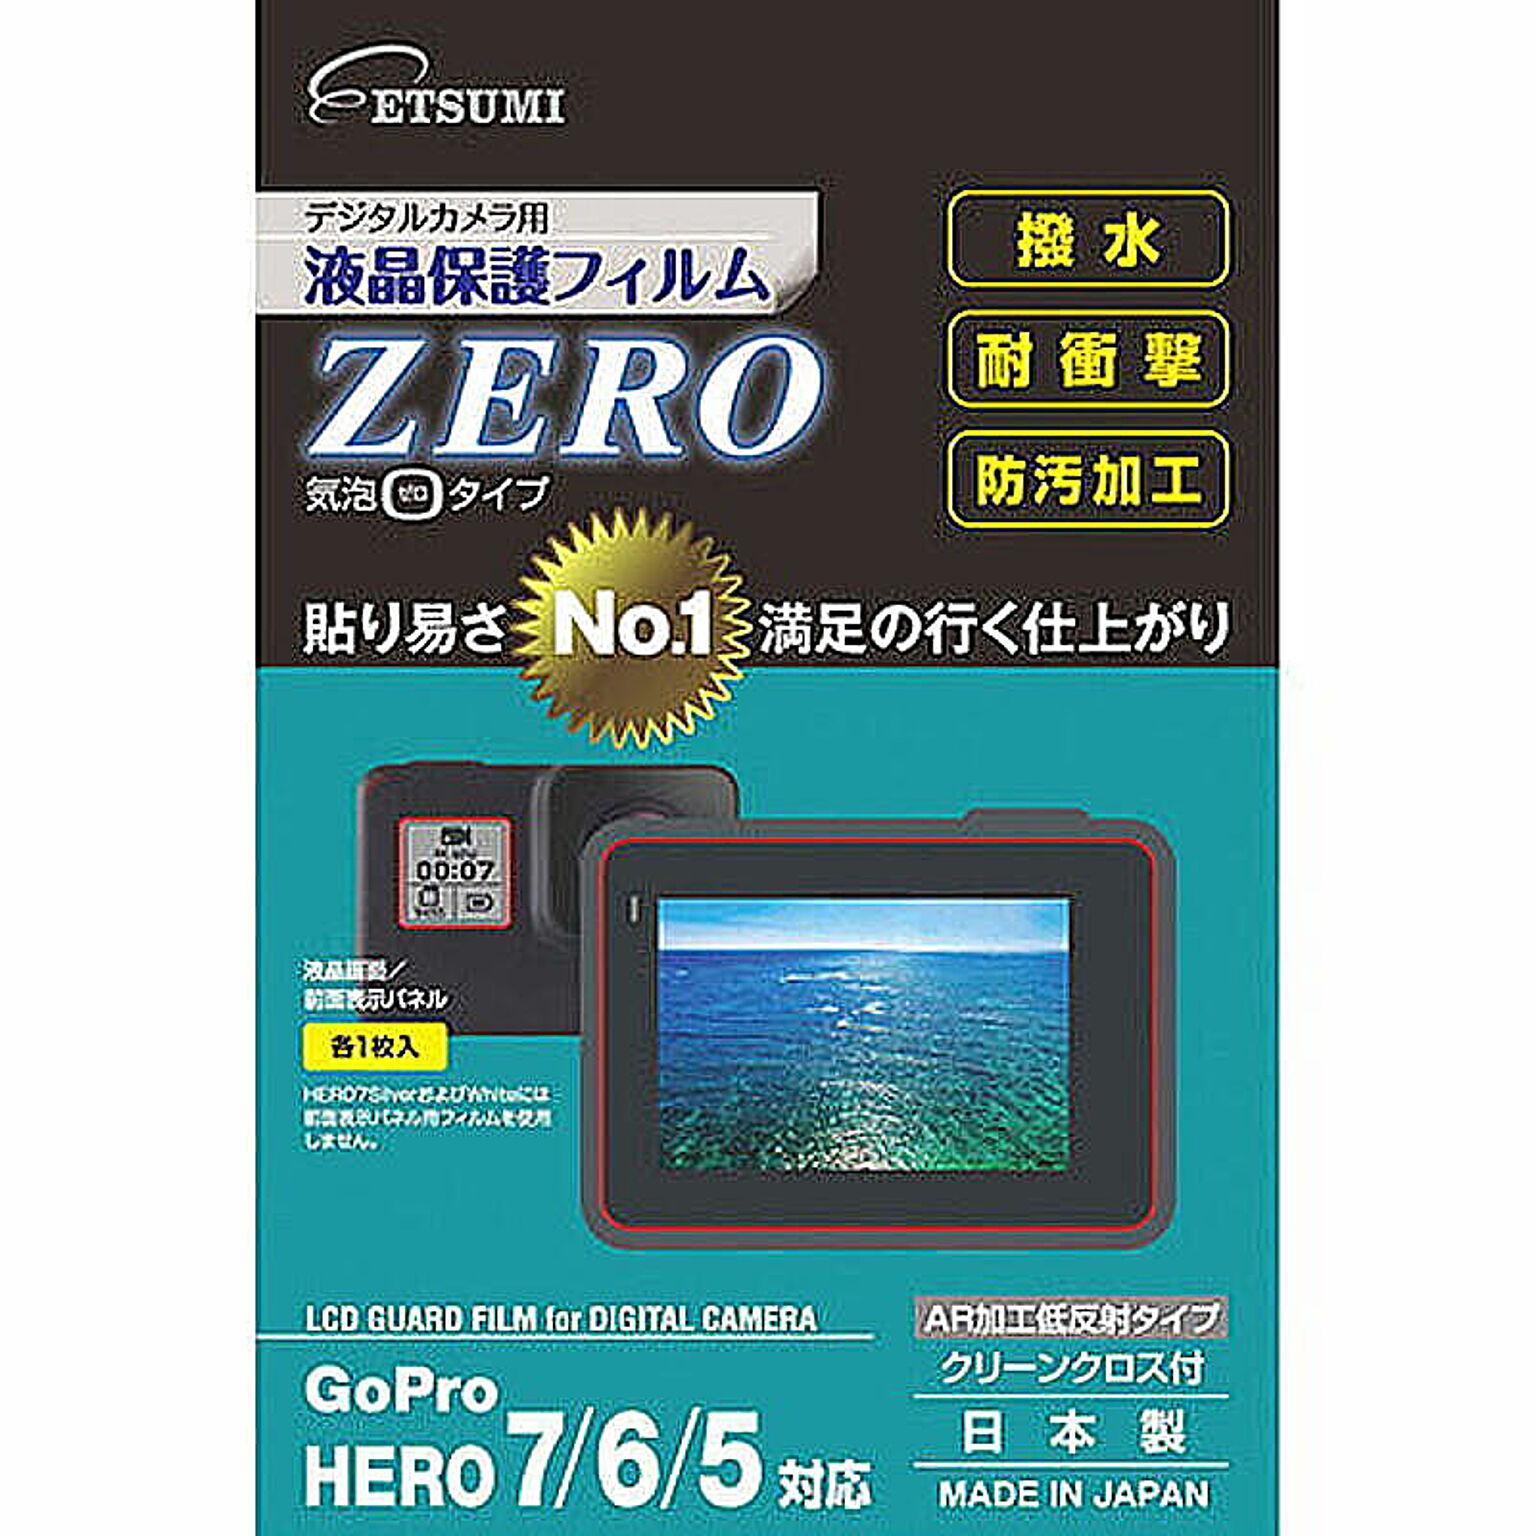 エツミ 液晶保護フィルムZERO GoPro HERO7/6/5対応 VE-7371 管理No. 4975981847707